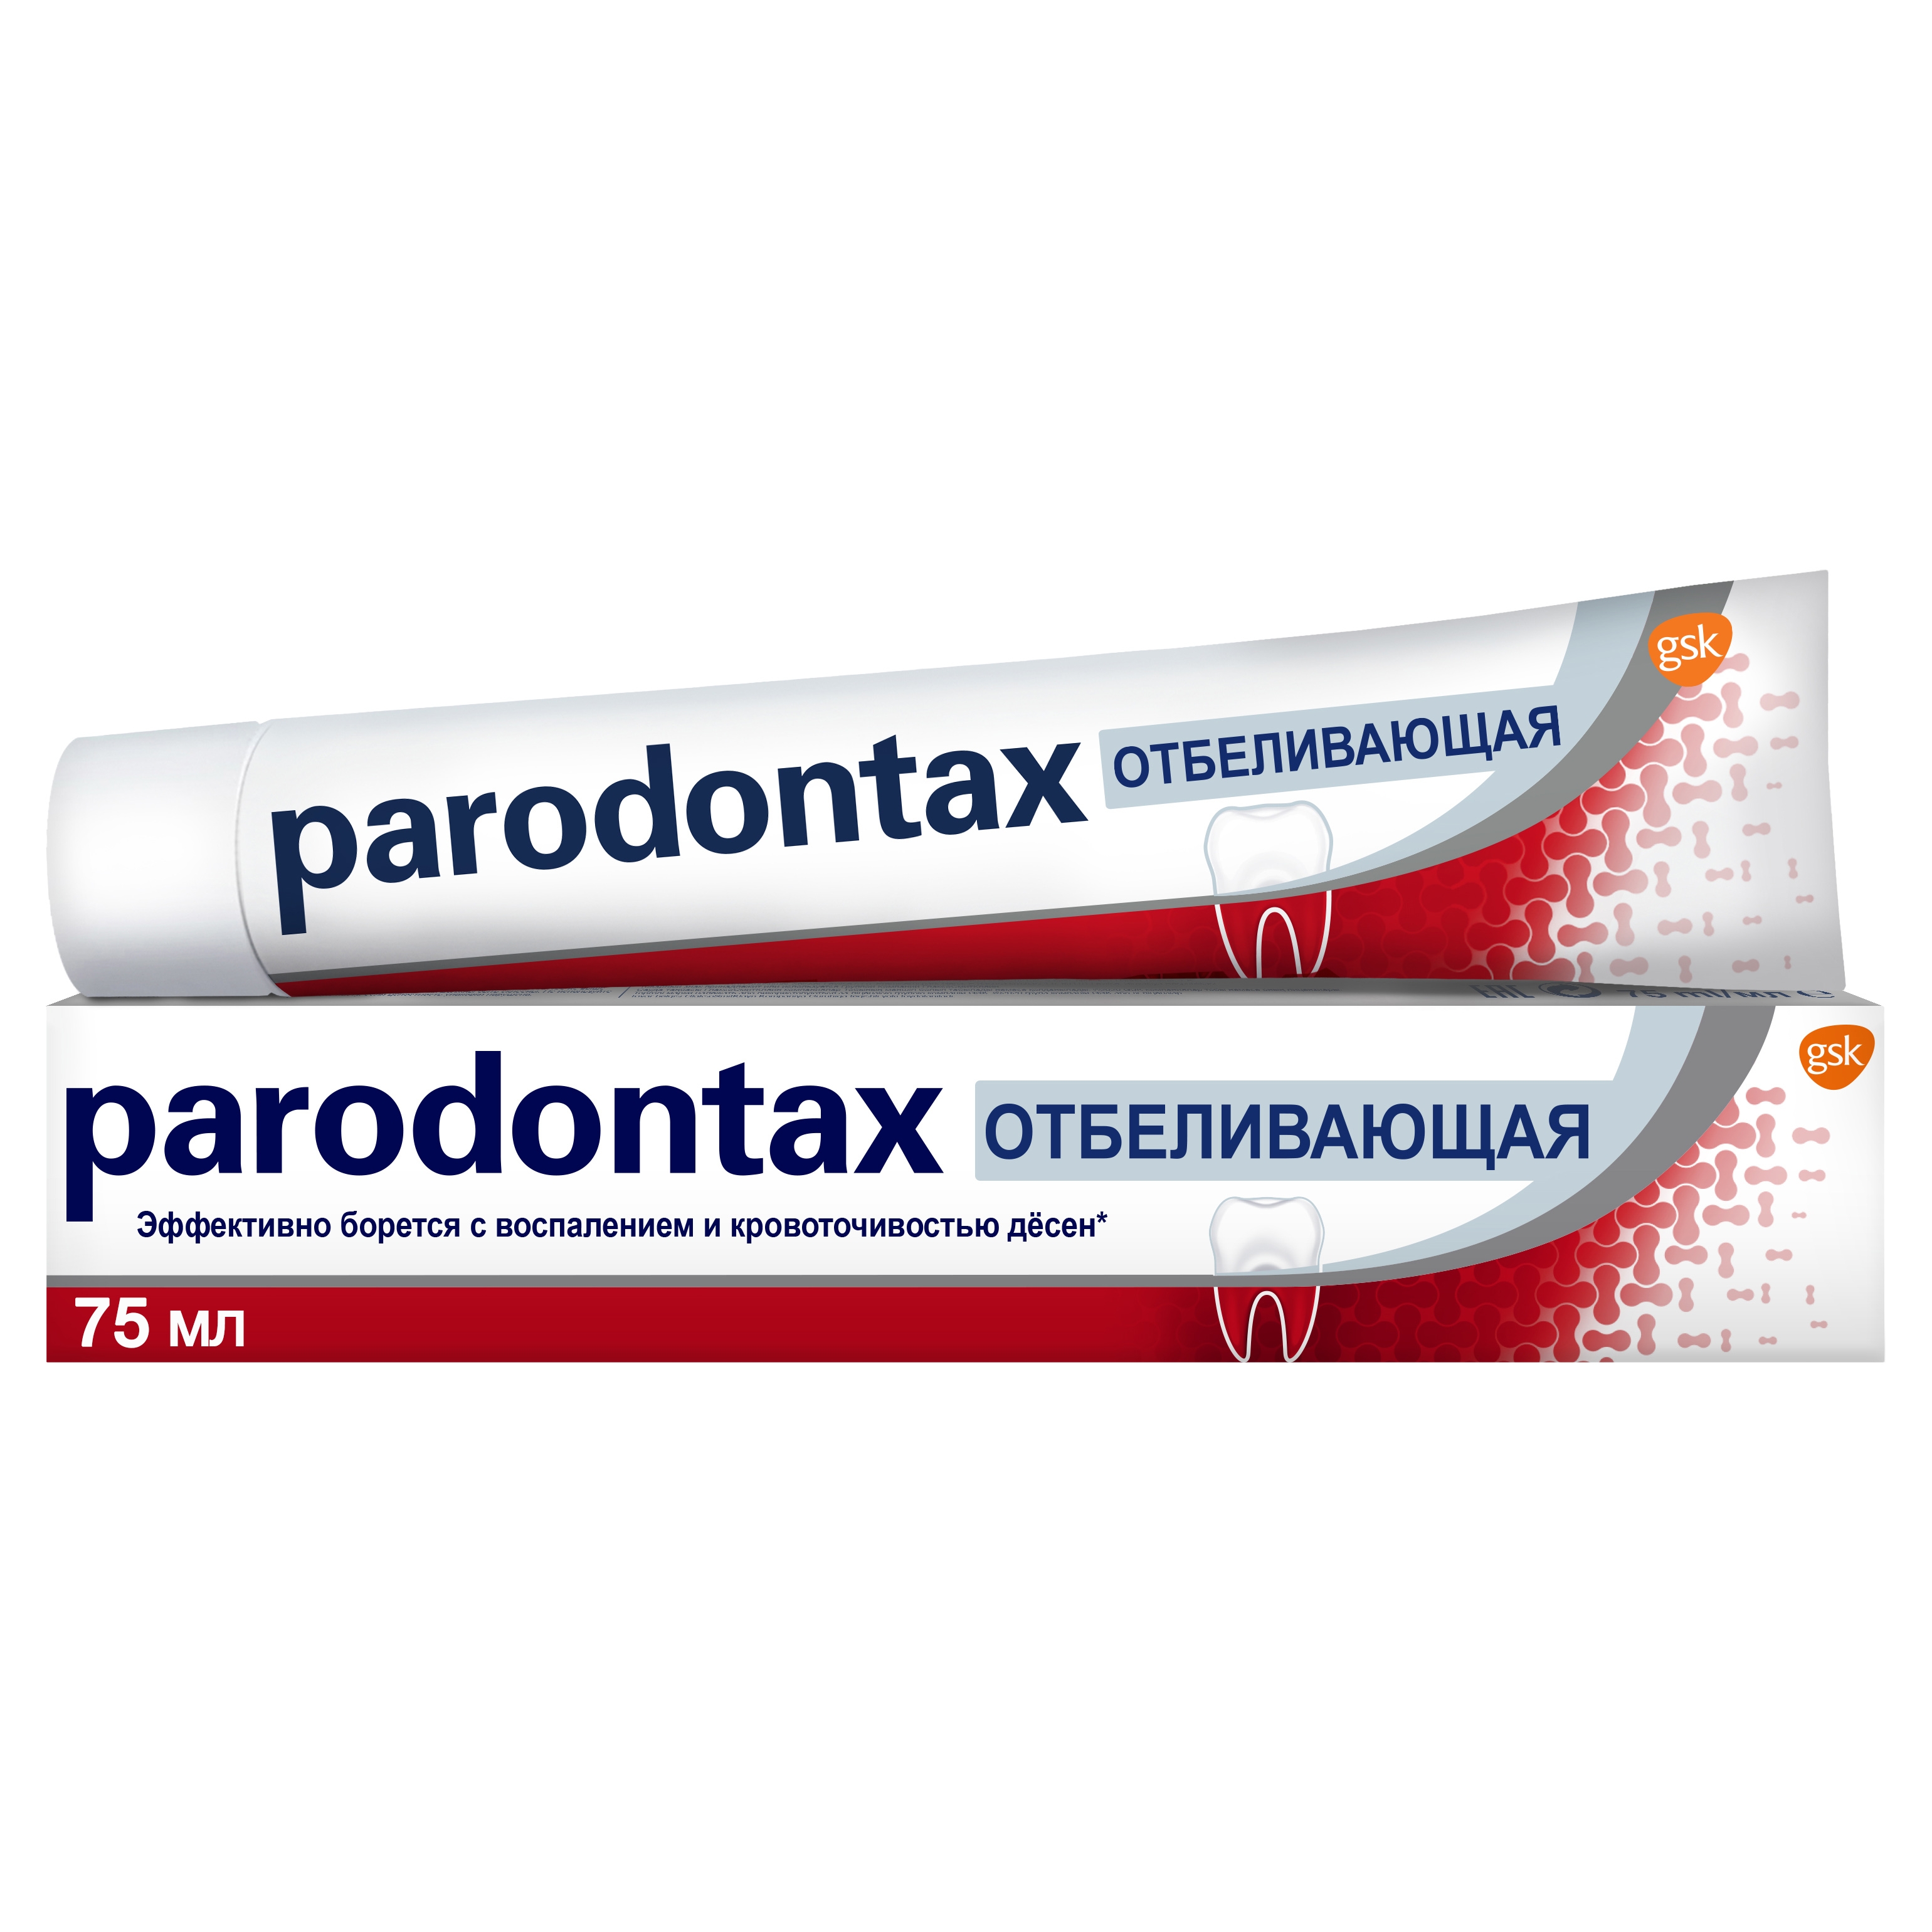 Зубная паста parodontax Отбеливающая от воспаления и кровоточивости десен с фтором, 75 мл.